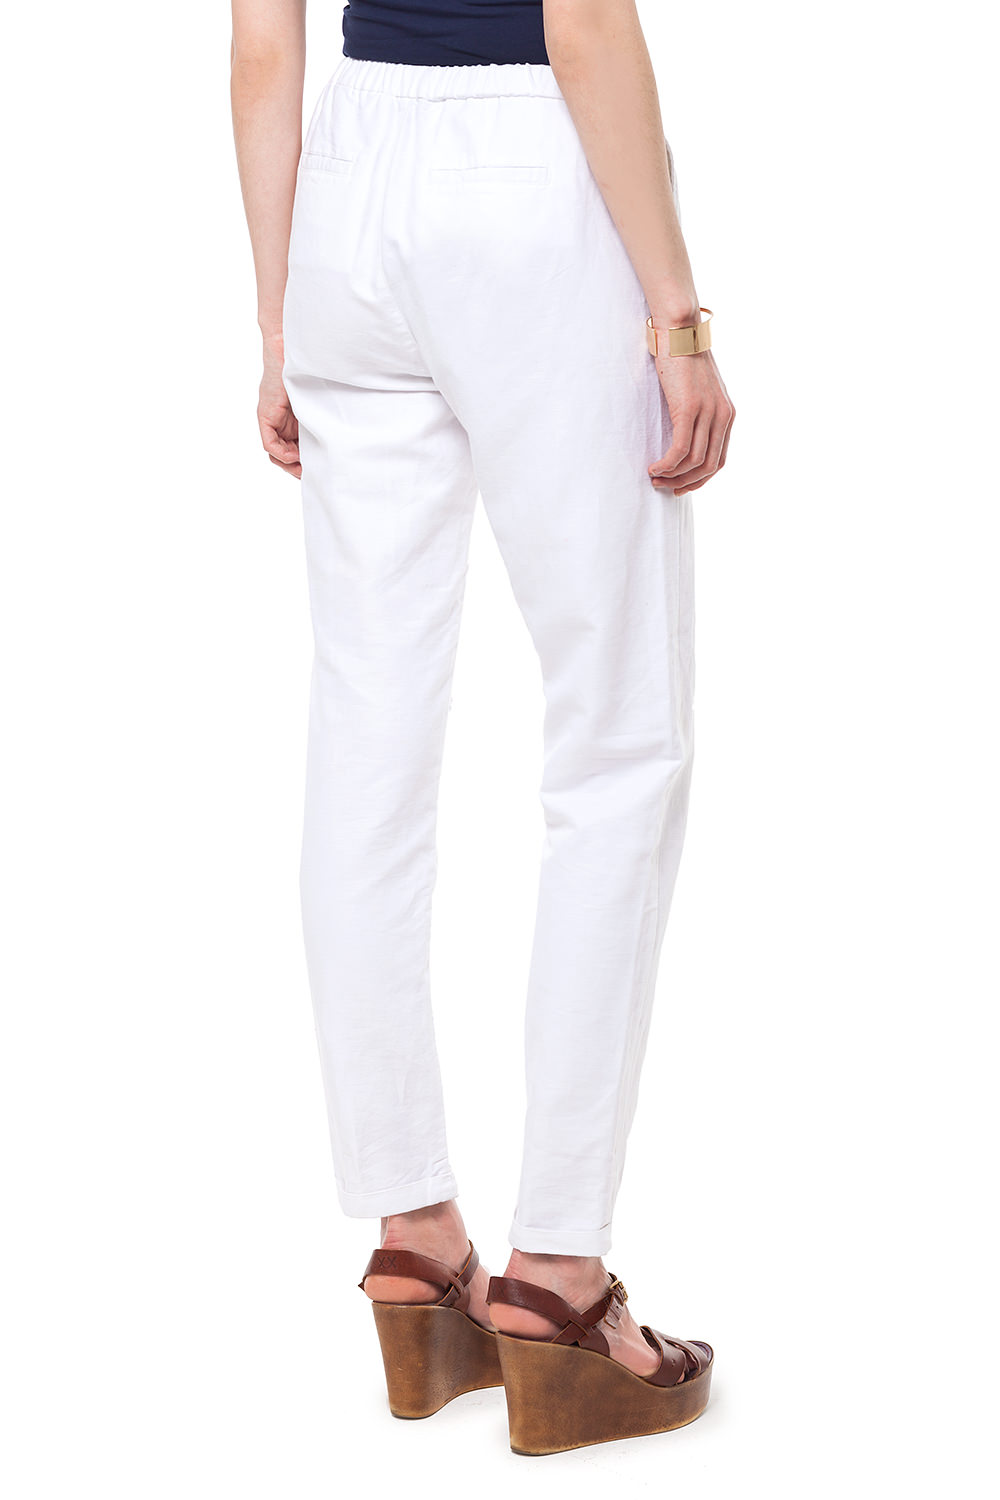 Фото товара 8992, белые льняные брюки